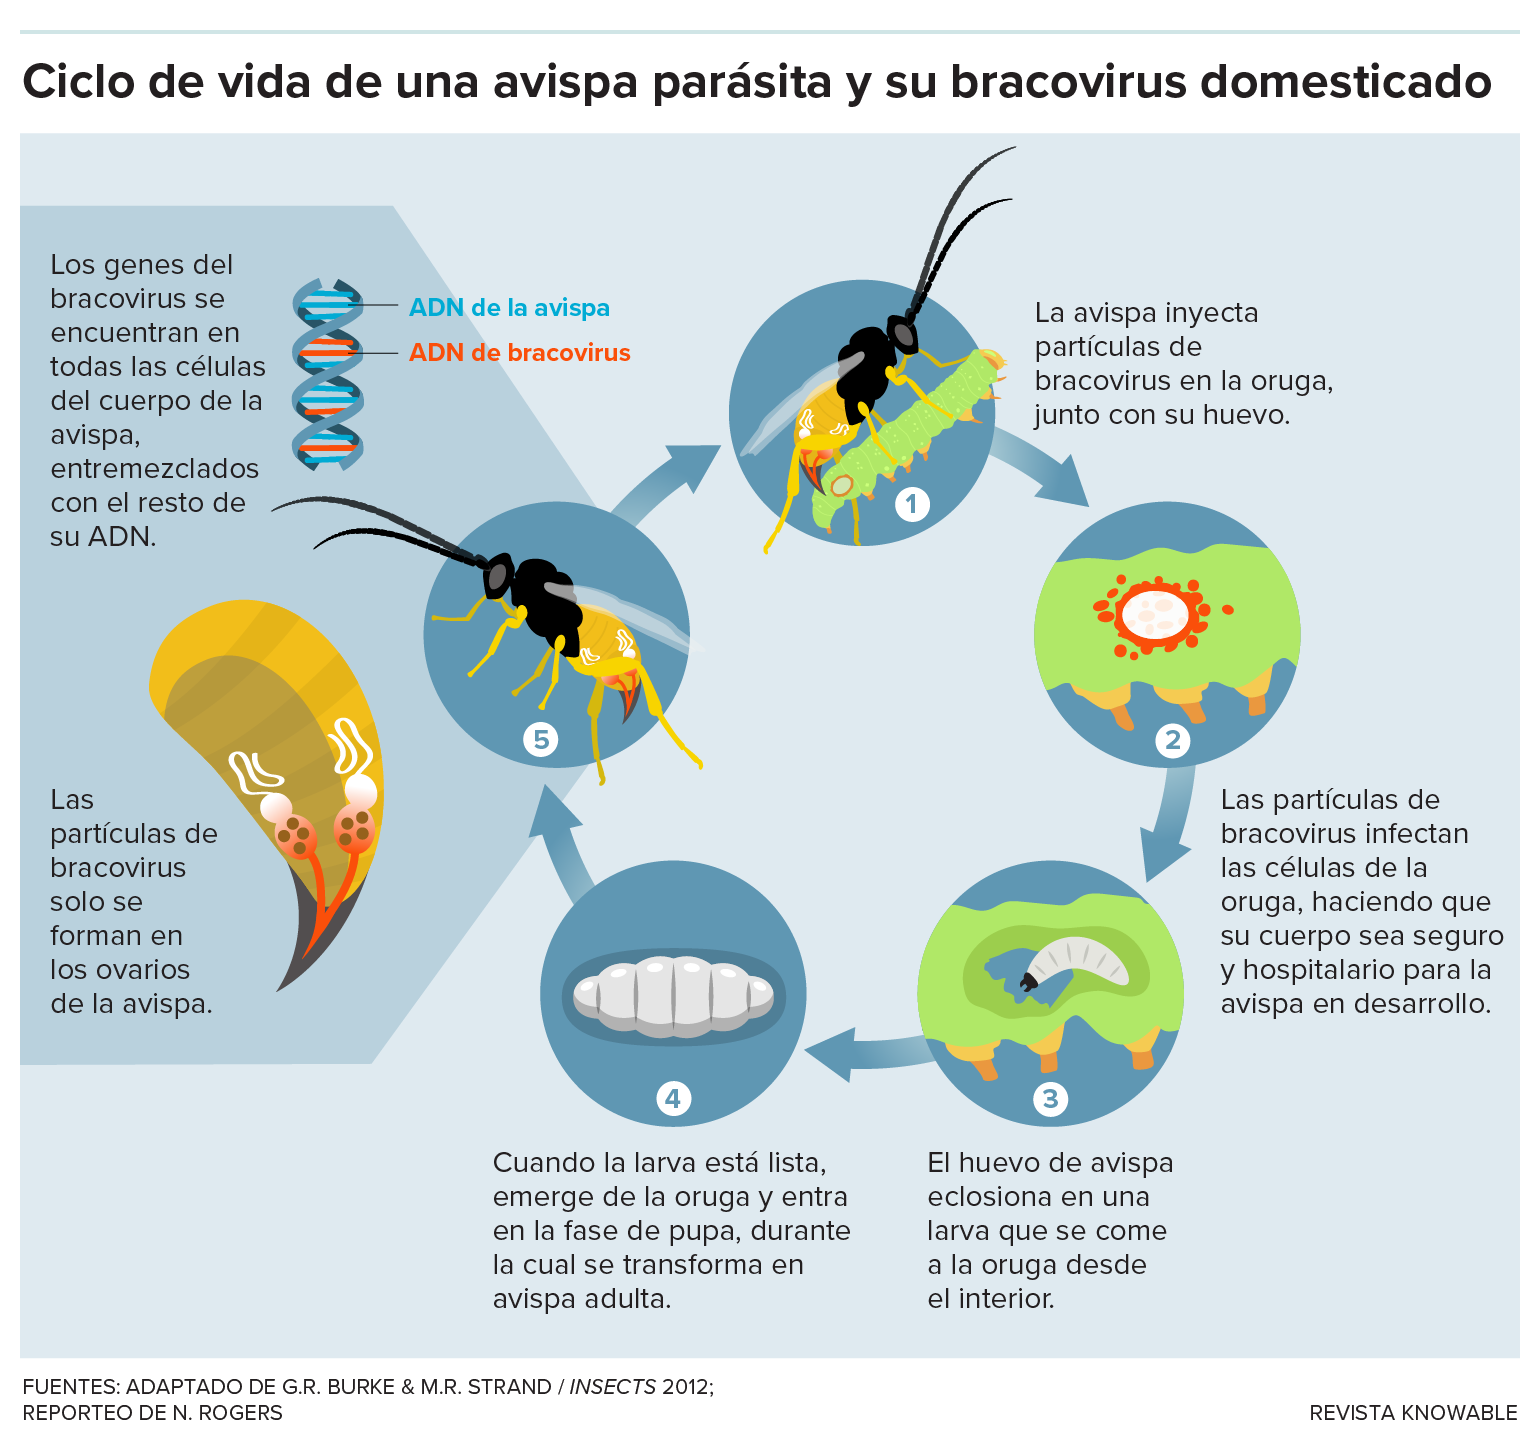 El gráfico muestra los pasos clave del ciclo de vida de una avispa parásita que alberga un bracovirus domesticado.